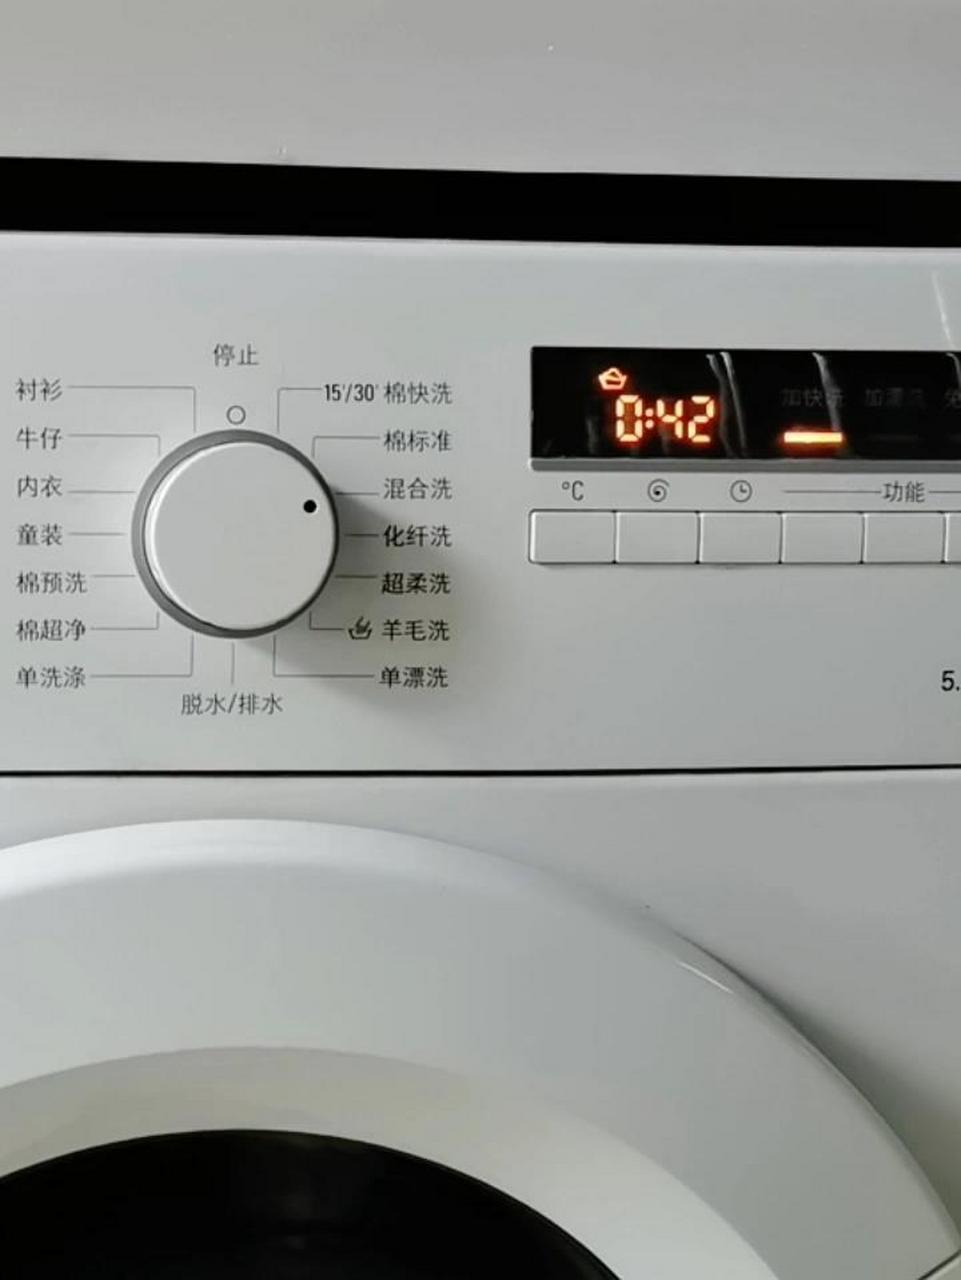 西门子洗衣机图片标识图片